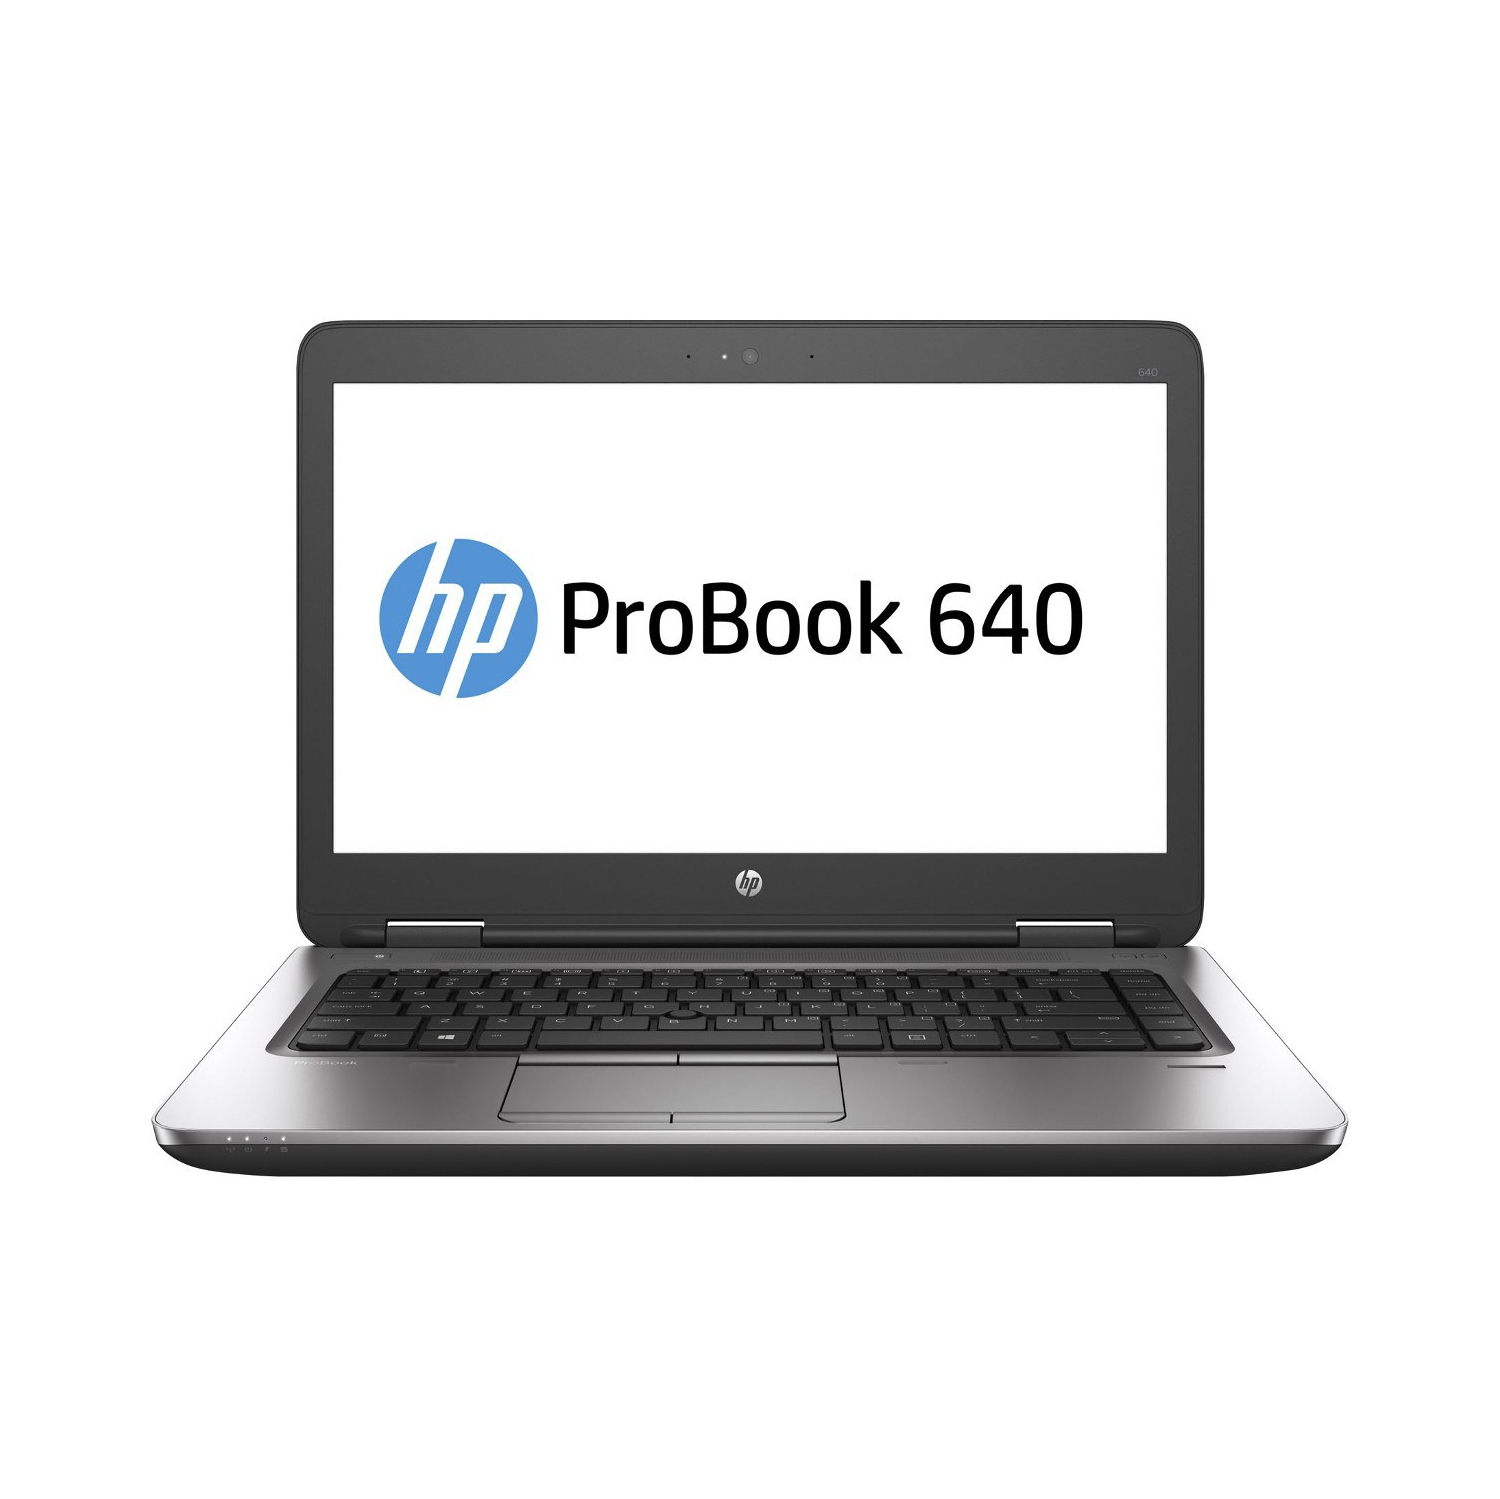 Refurbished (Excellent) - HP ProBook 640 G2 14" Laptop, Intel Core i7 6600U up to 3.4 GHz, 12G DDR4, 240G SSD, VGA, DP, Win10P64 (EN/FR/ES)